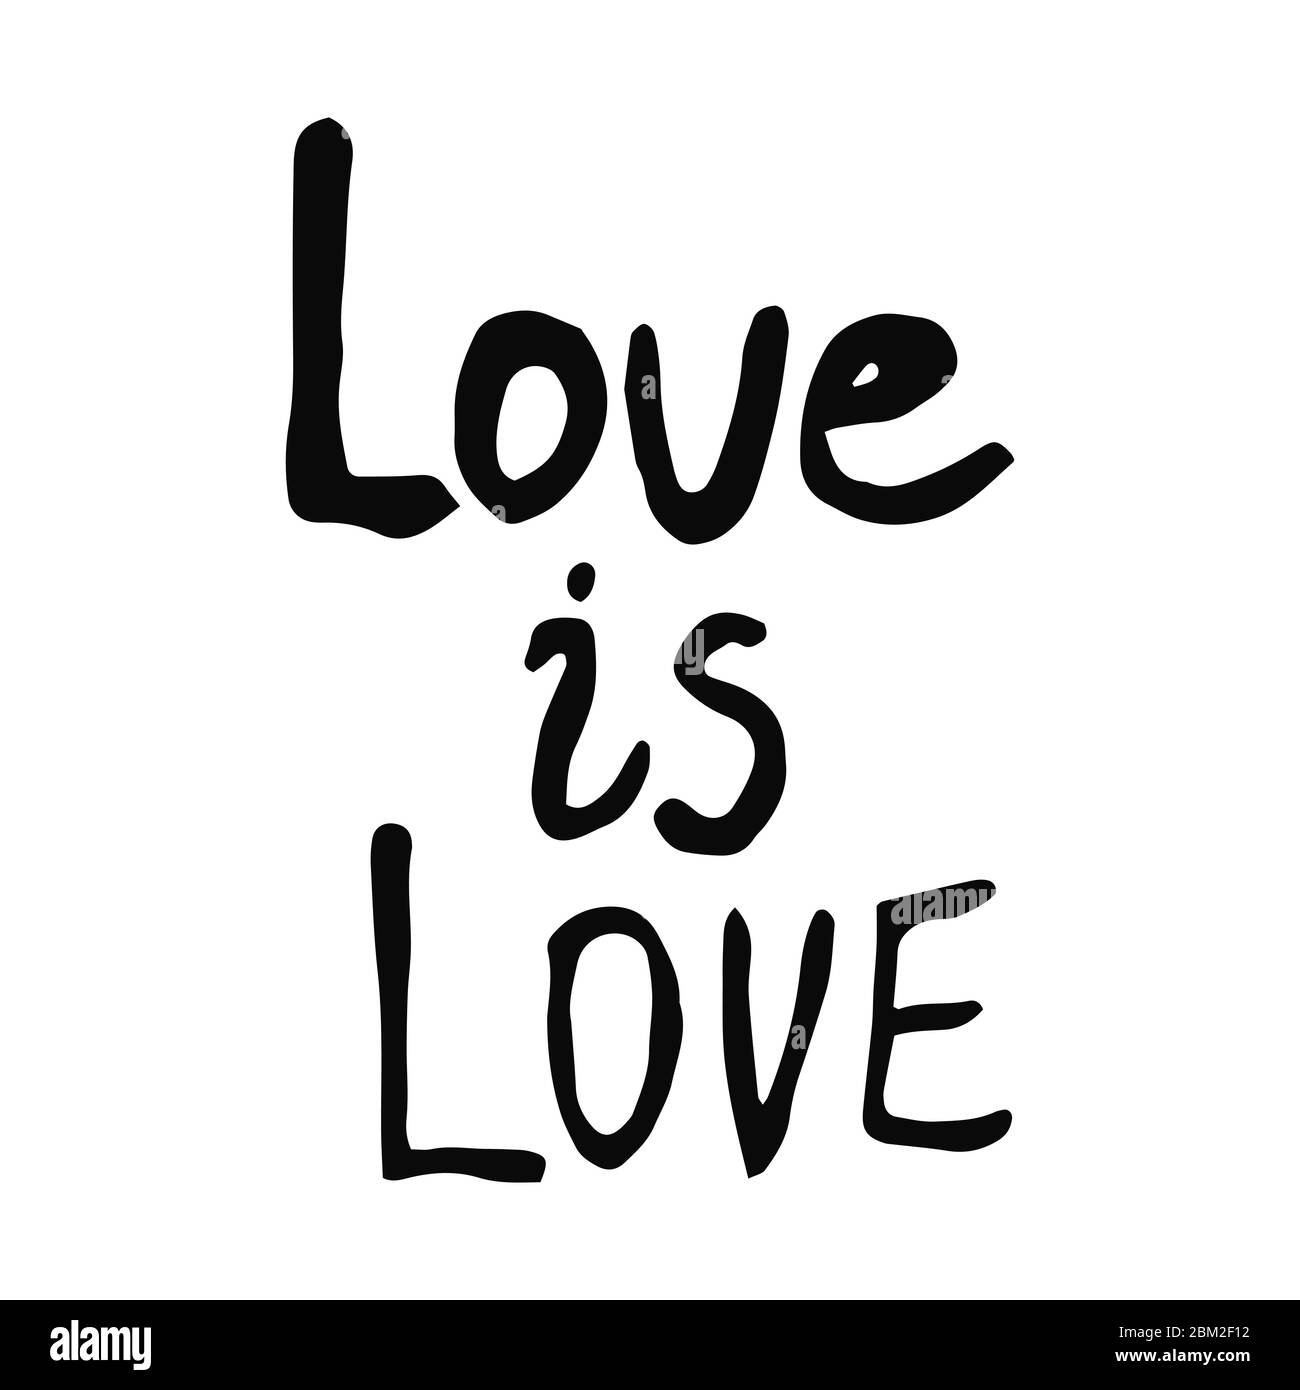 Lettering Text Liebe ist Liebe im Doodle-Stil - Leben, wird, besser, together.Hand geschrieben Stolz, Liebe, Frieden Schriftzug mit Regenbogen..LGBT Rechte Symbol. Ist Stock Vektor